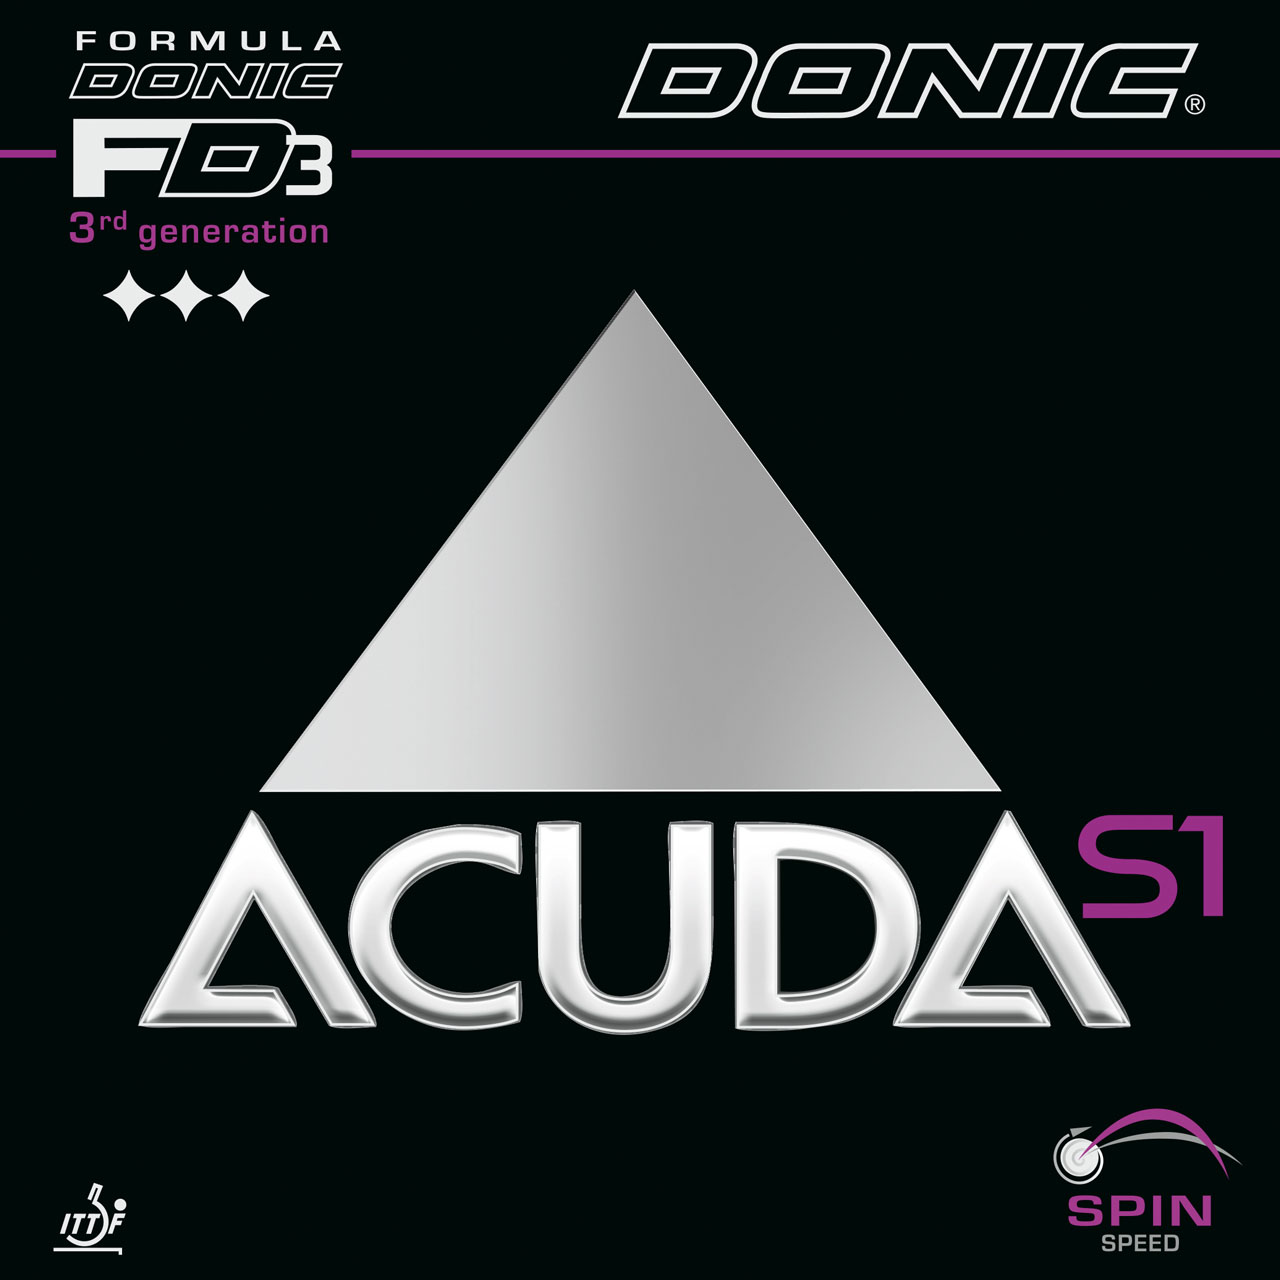 Накладка для настольного тенниса Donic Acuda S1, Black, 2.0